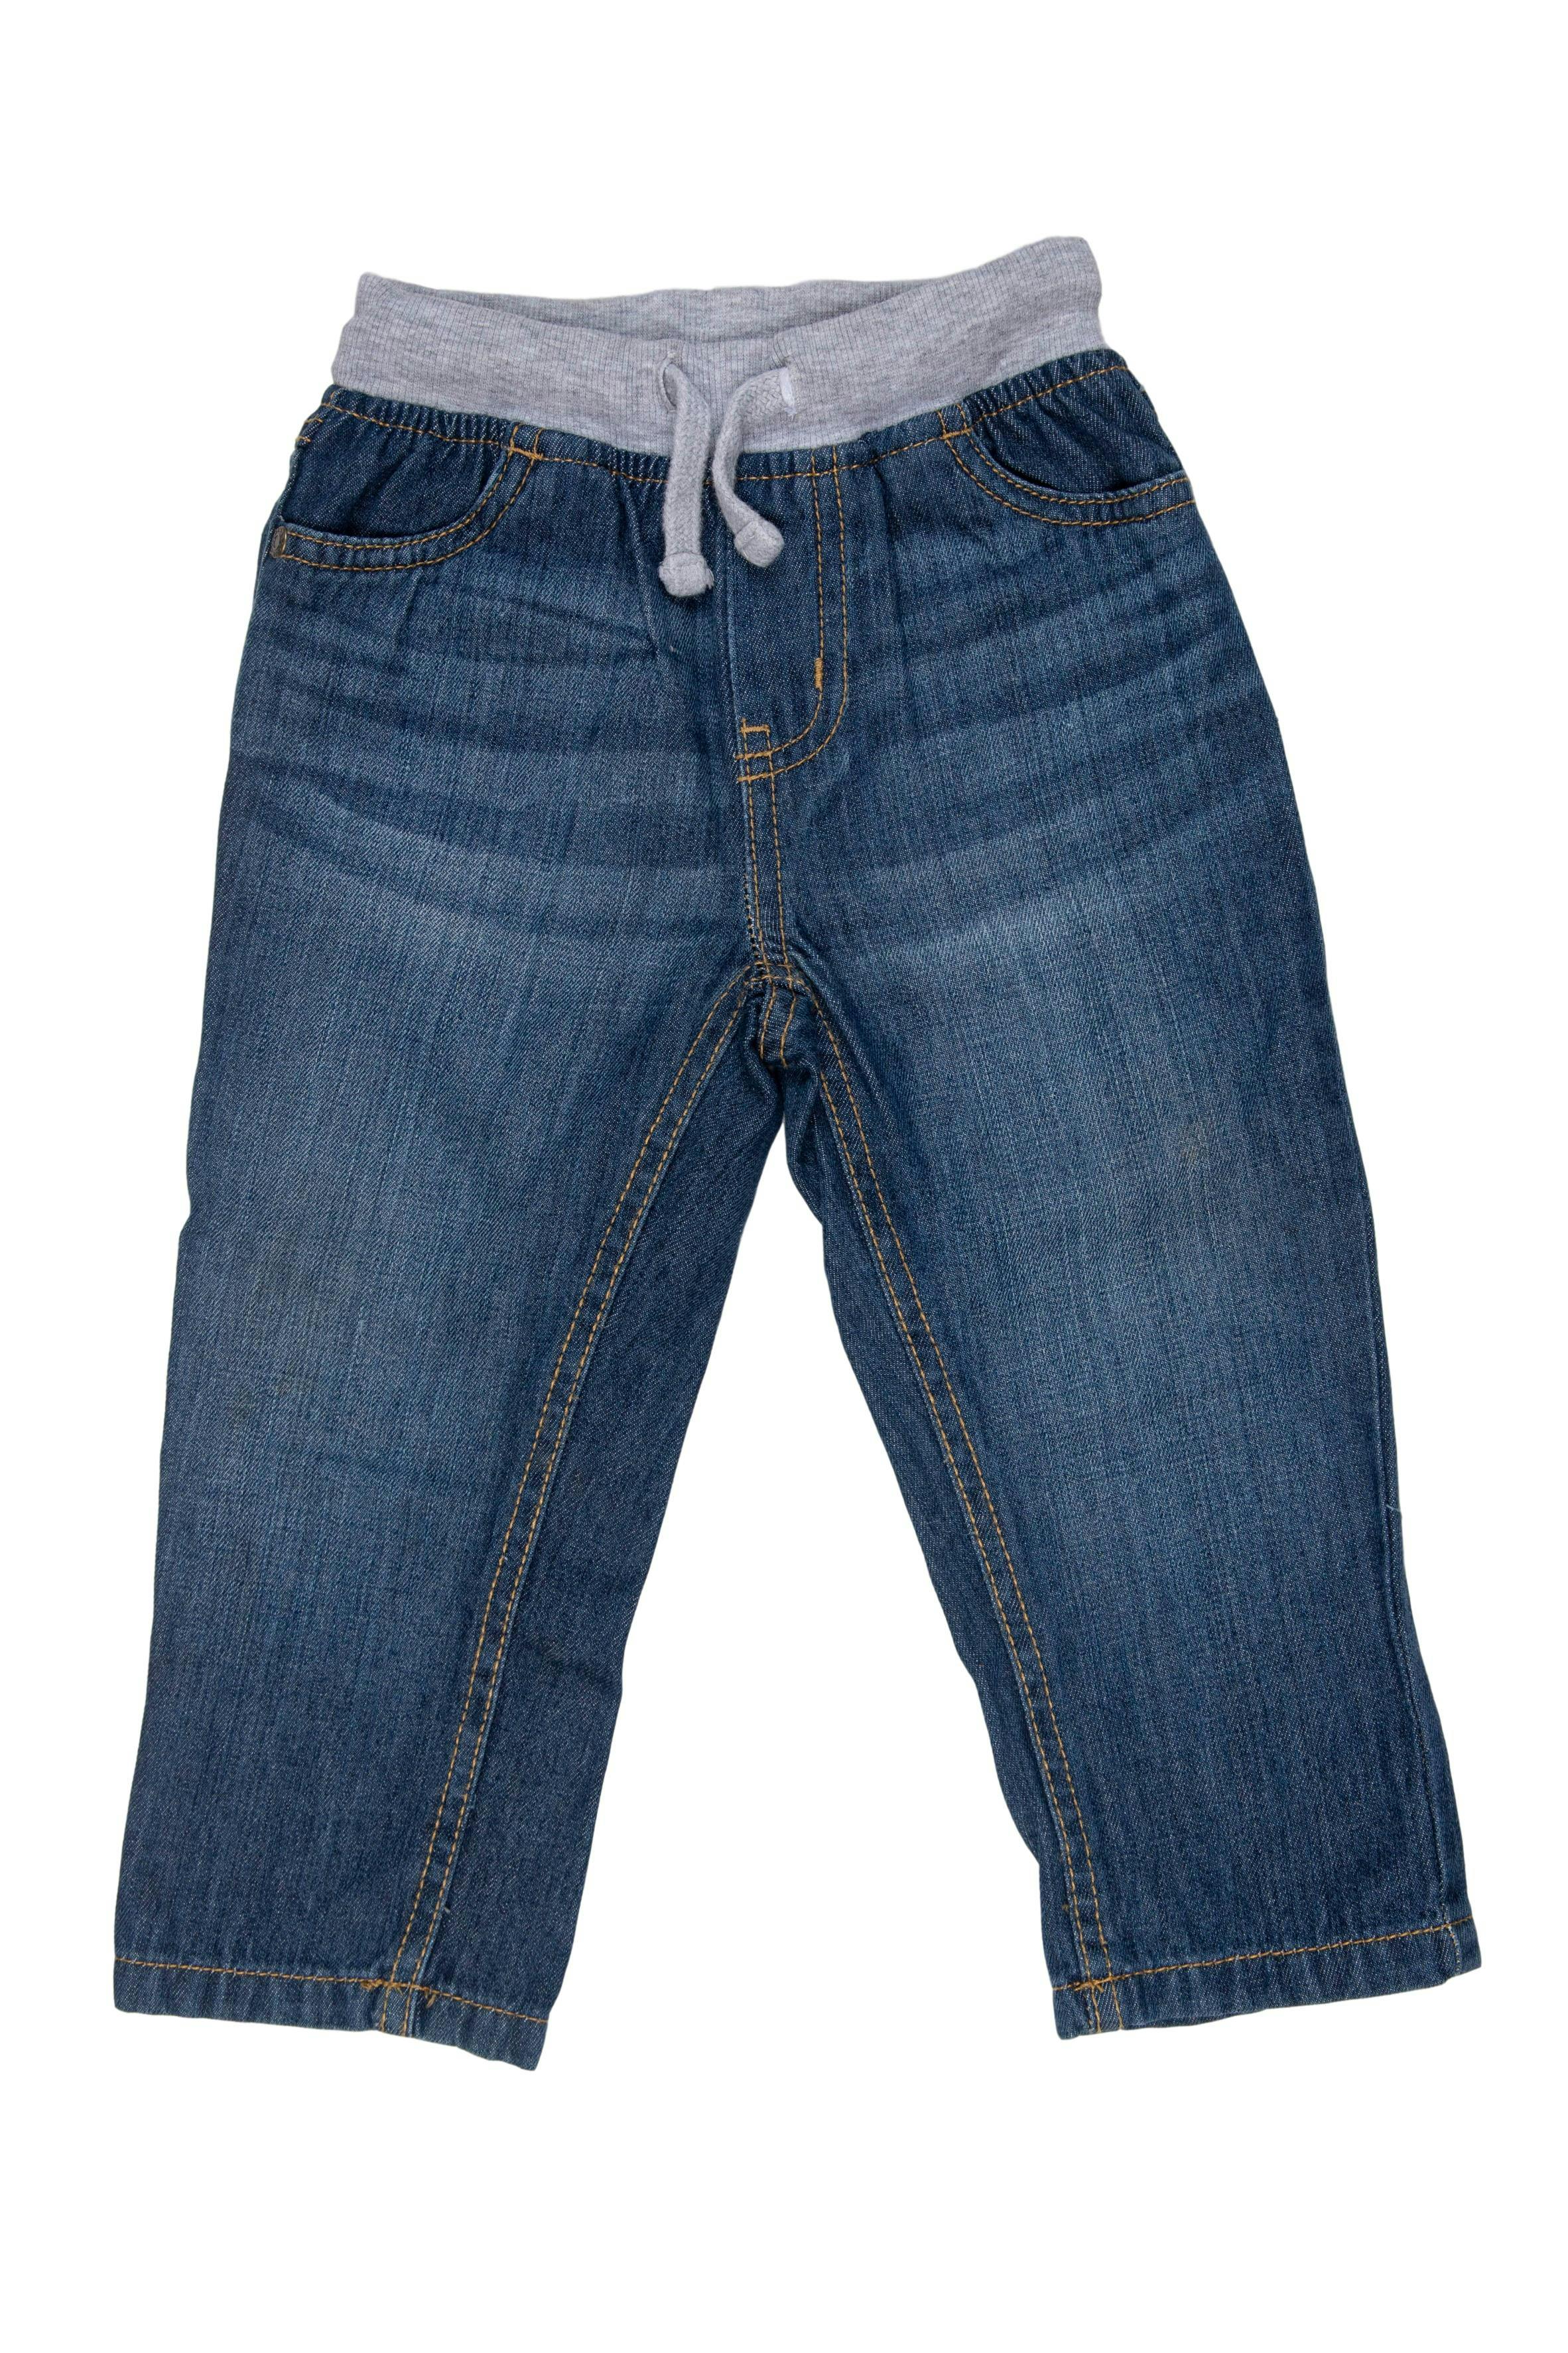 Pantalon denim 100% algodón, tela sueve.  Cintura de rib regulable con pasador. - Mothercare